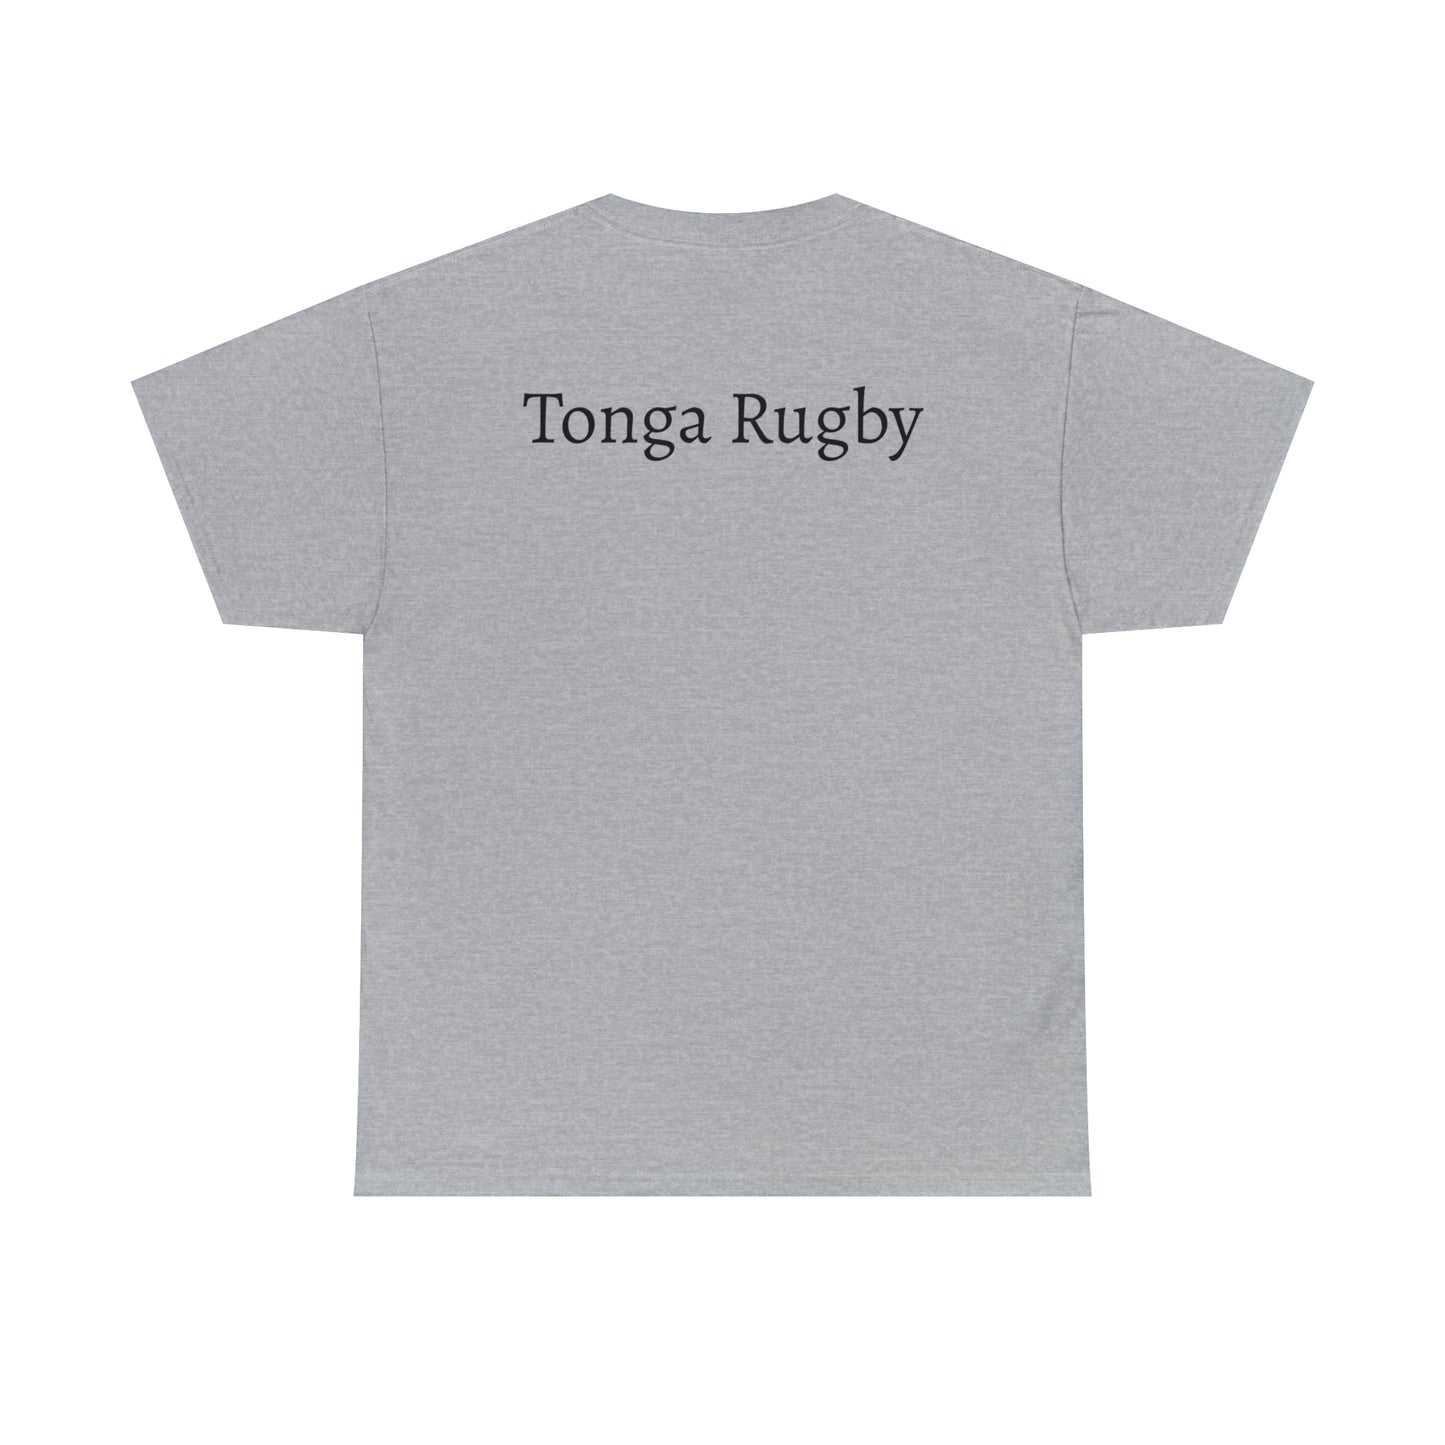 Ready Tonga - light shirts